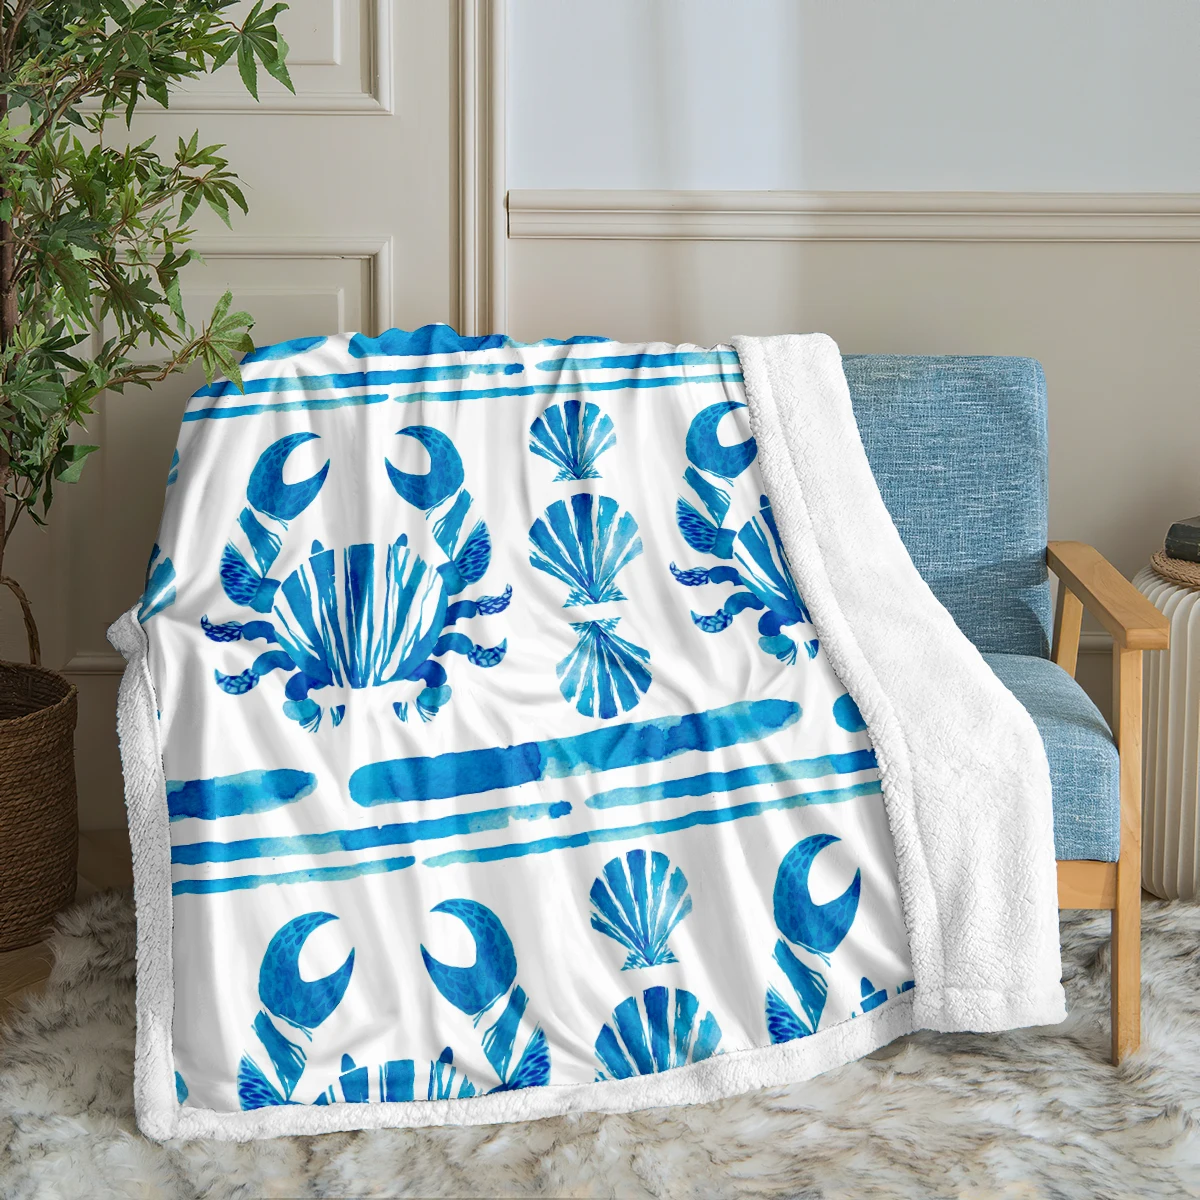 

Ocean Throw Blanket Crab Sherpa Blanket Cute Blanket Soft Black European Style Blanket for Sofa Office